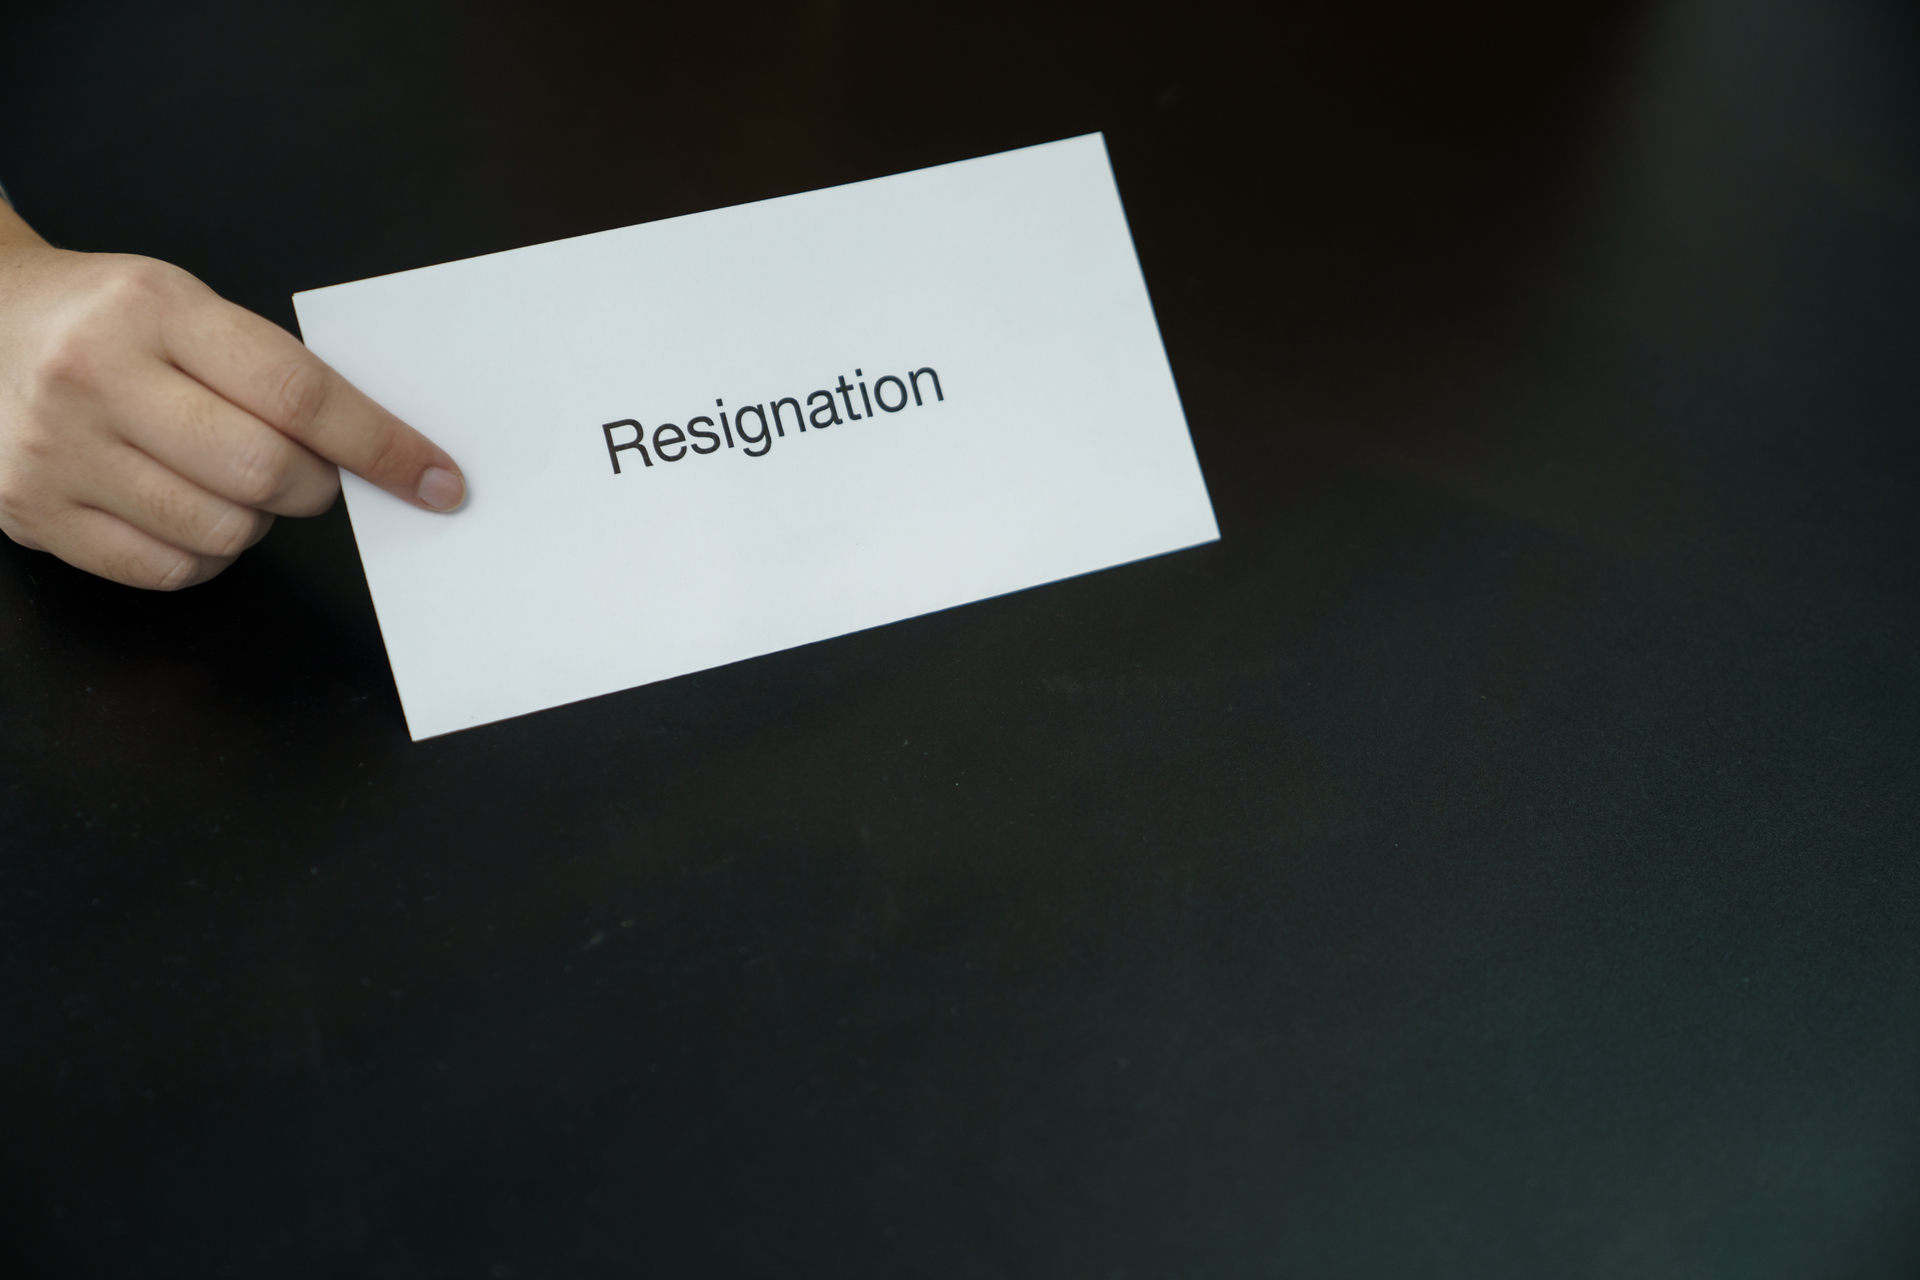 Kartka papieru z wyrazem "Resignation" (rezygnacja) wypisanym na niej na czarnym tle